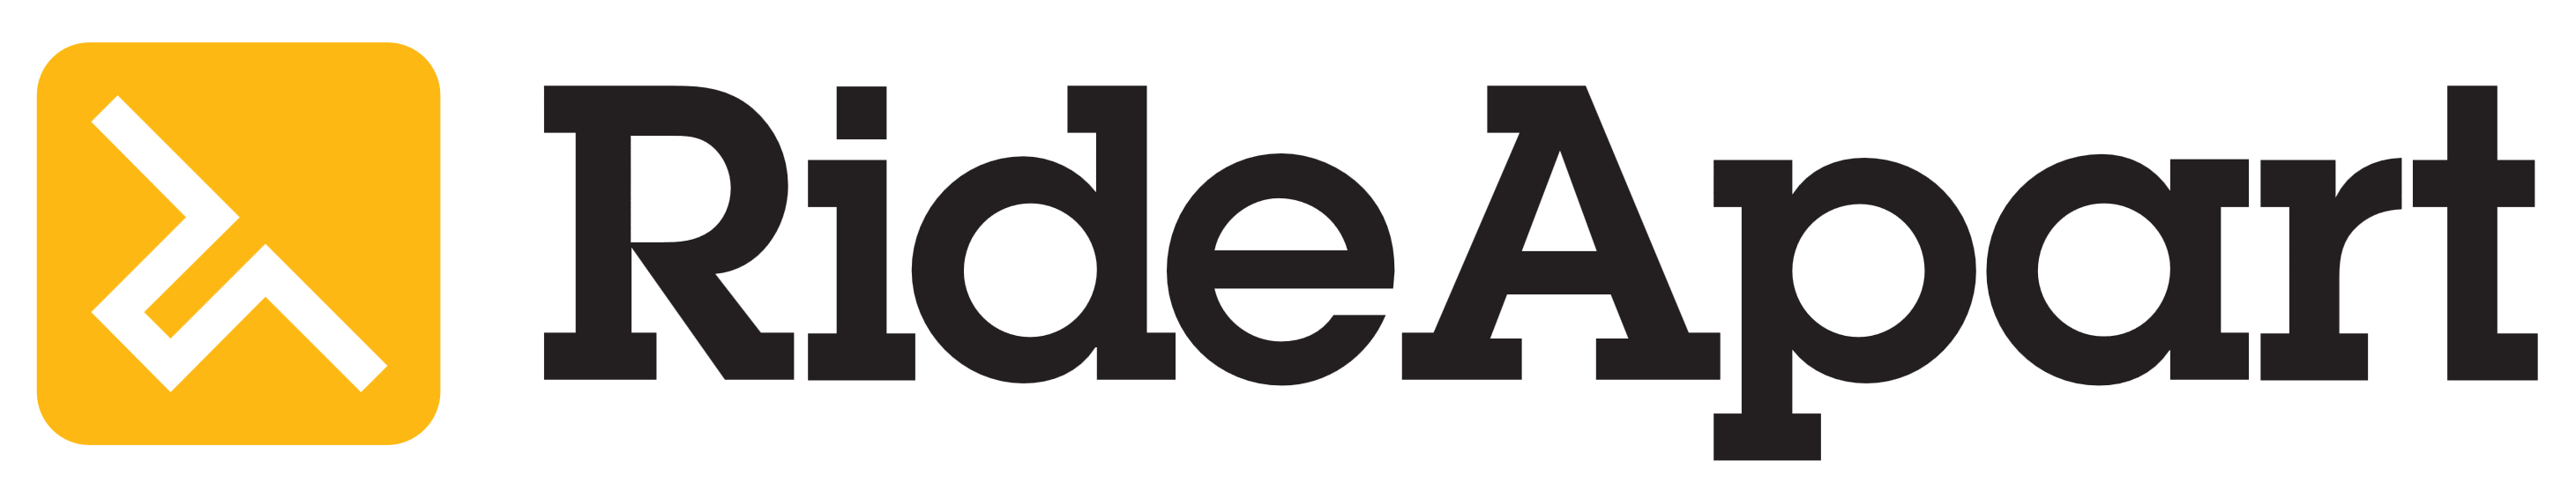 RideApart logo, logotype